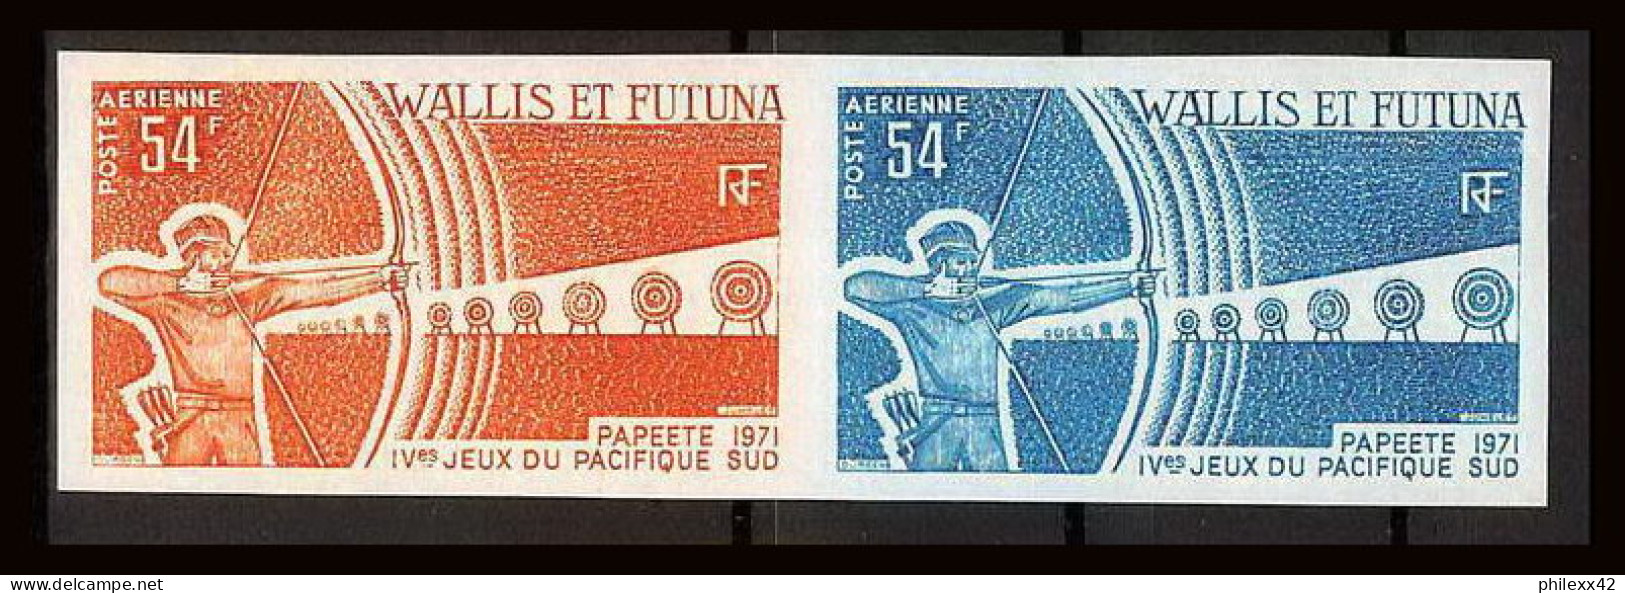 92552b Wallis Et Futuna PA N°40 Tir à L'arc Archery Jeux Du Pacific 1971 Paire Essais Proof Non Dentelé Imperf ** MNH  - Tir à L'Arc